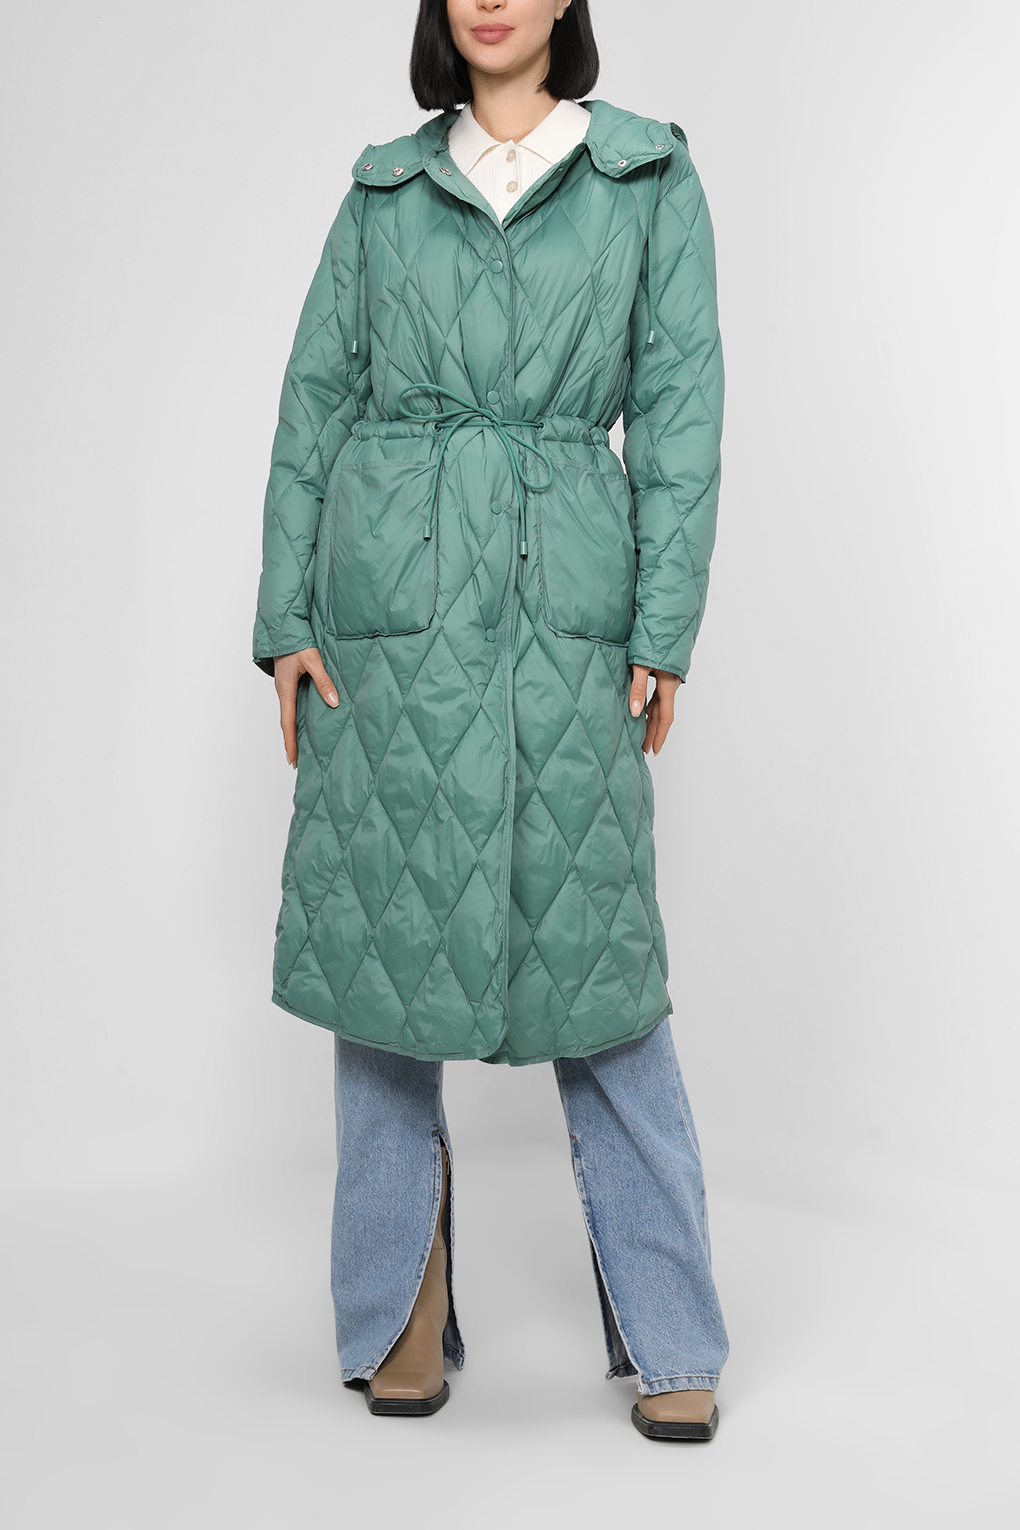 Пальто женское Belucci BL22086194-004 зеленое 48 RU